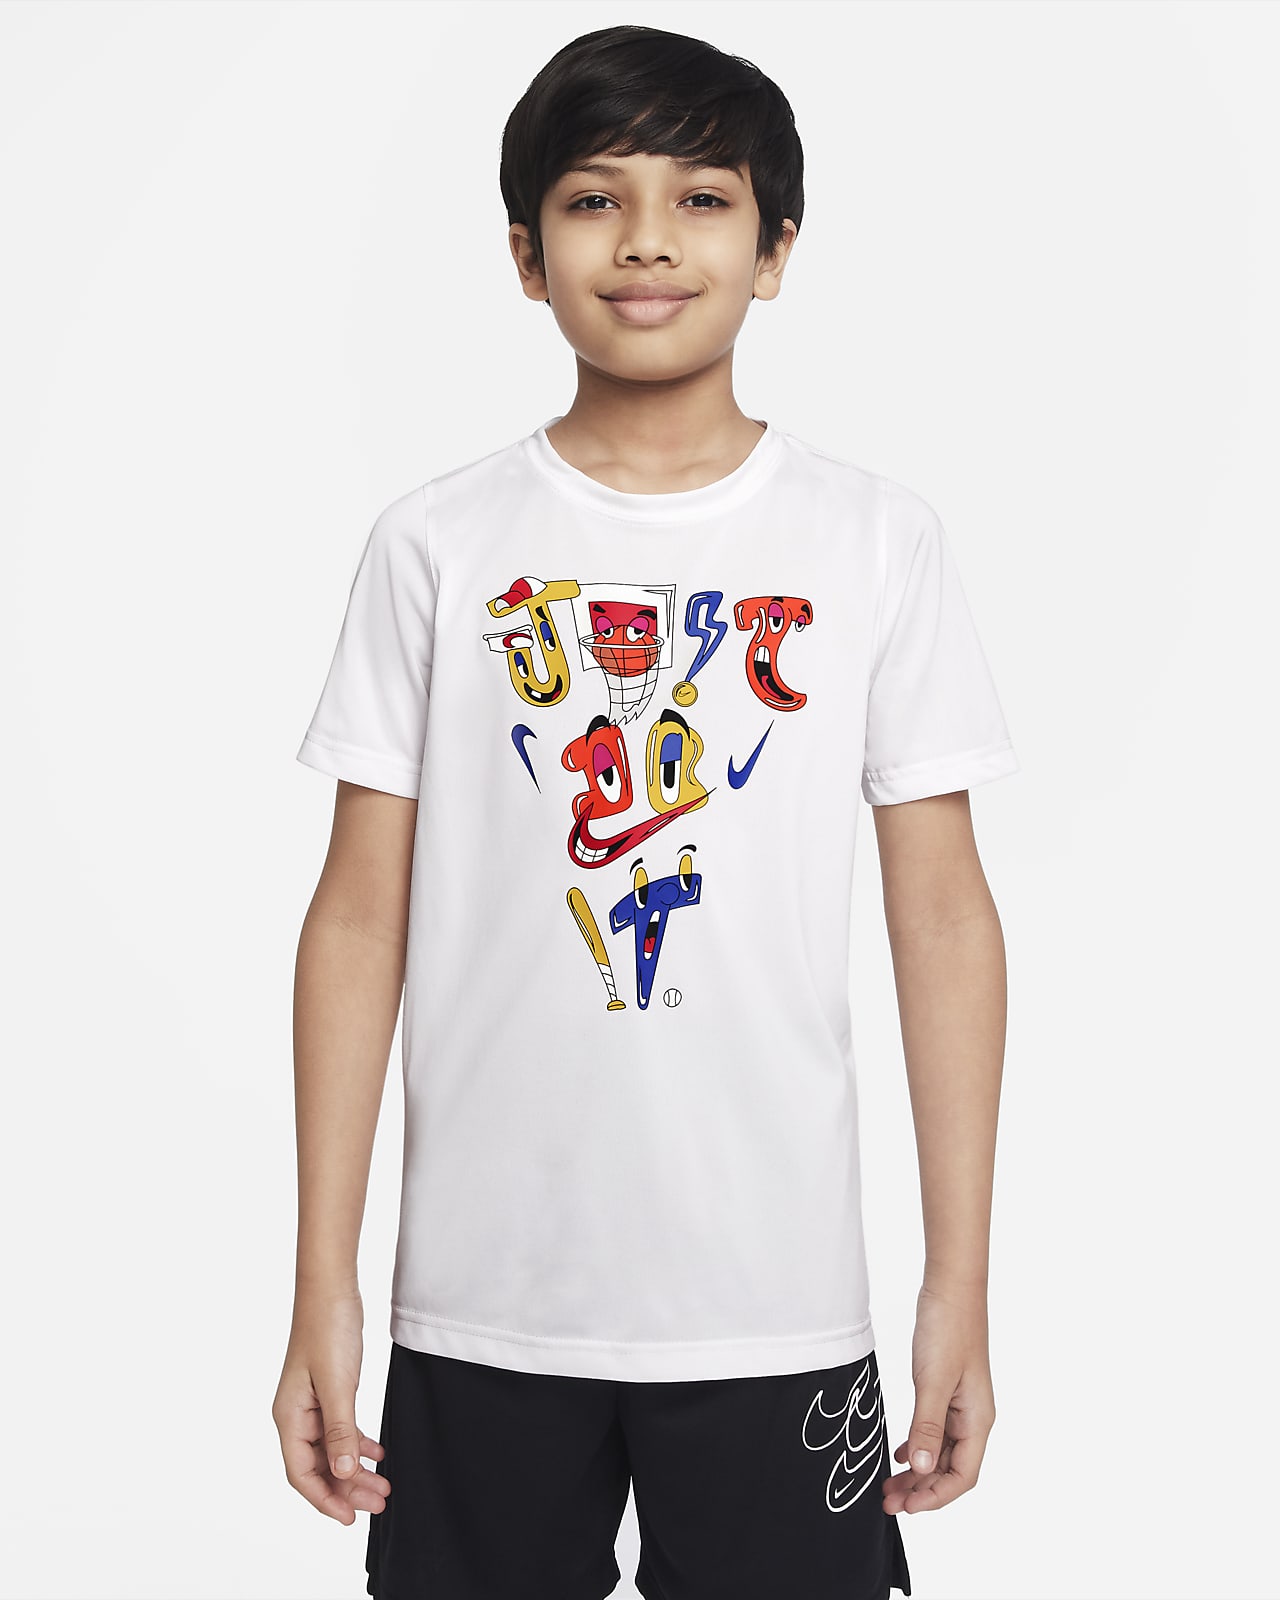 Nike Dri-FIT JDI Older Kids' (Boys') T-Shirt